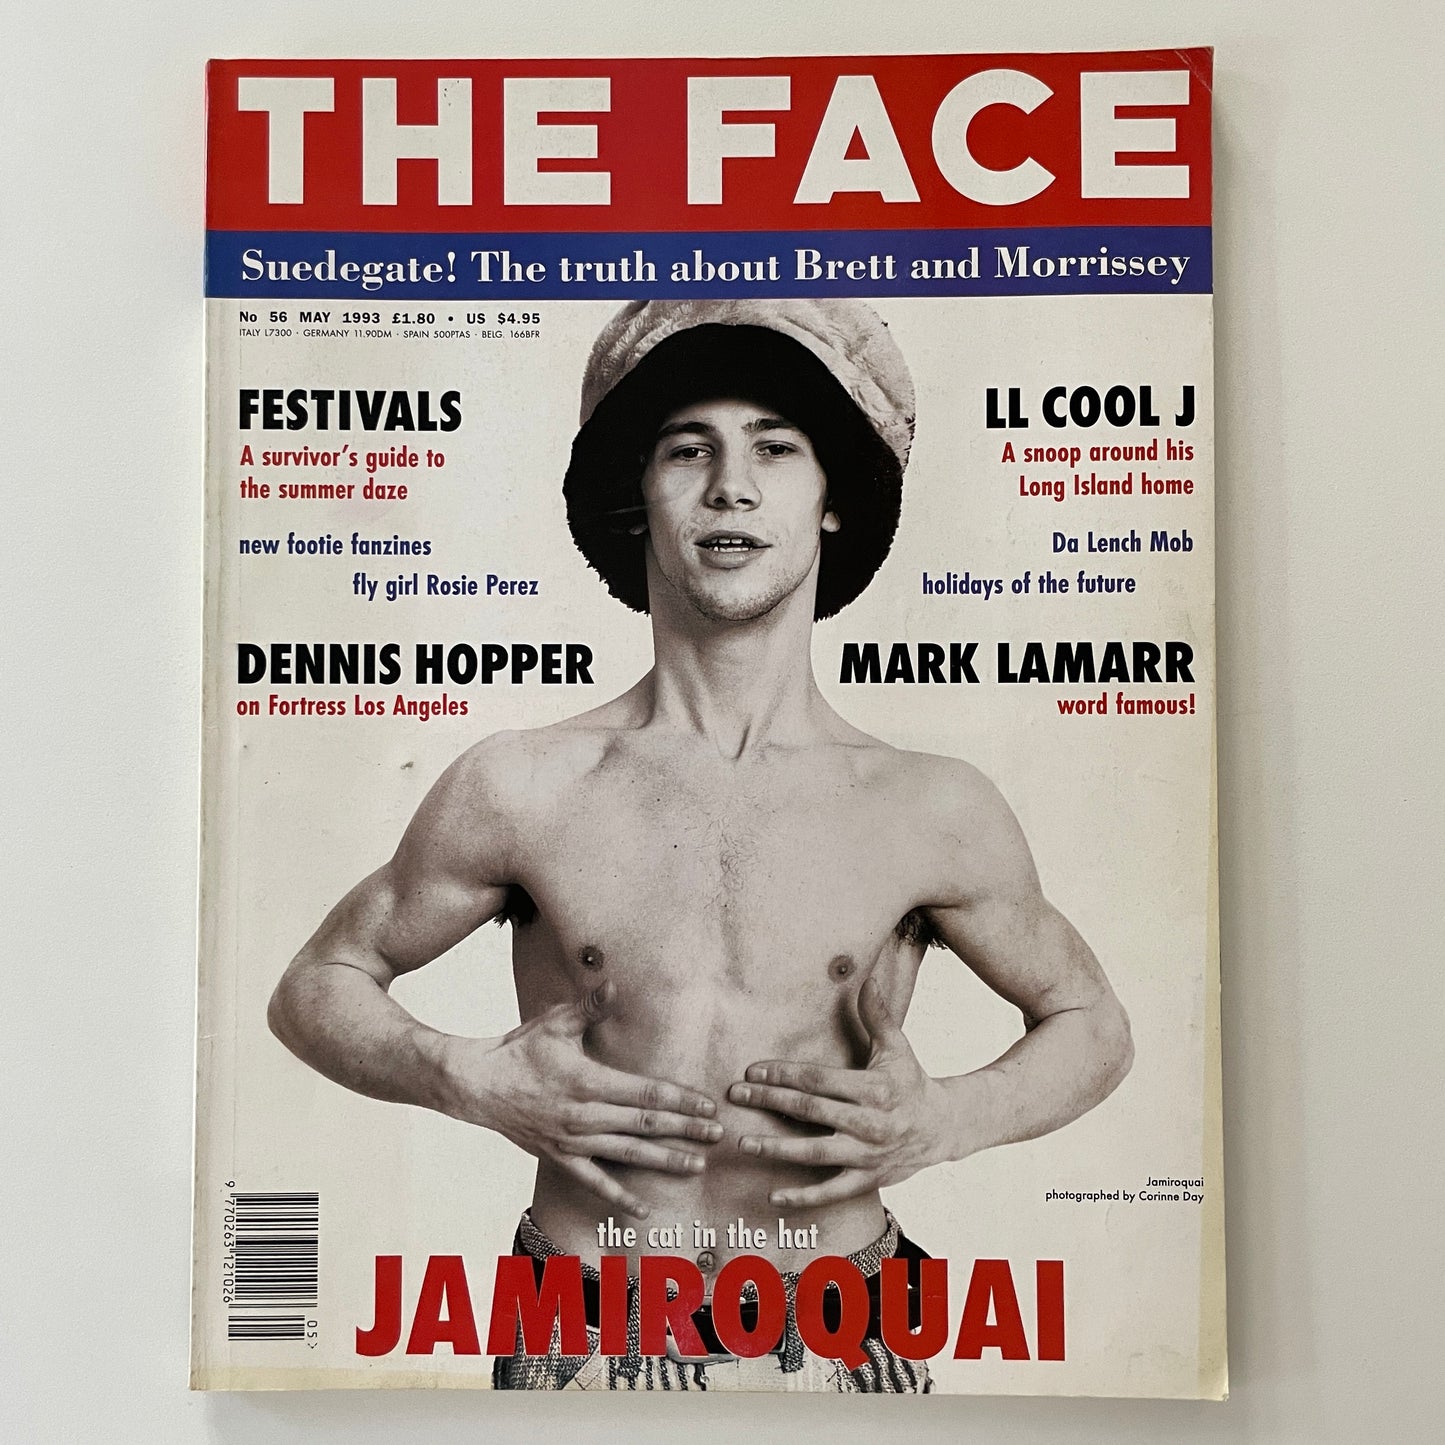 The Face No.56 - May 1993 - Jamiroquai